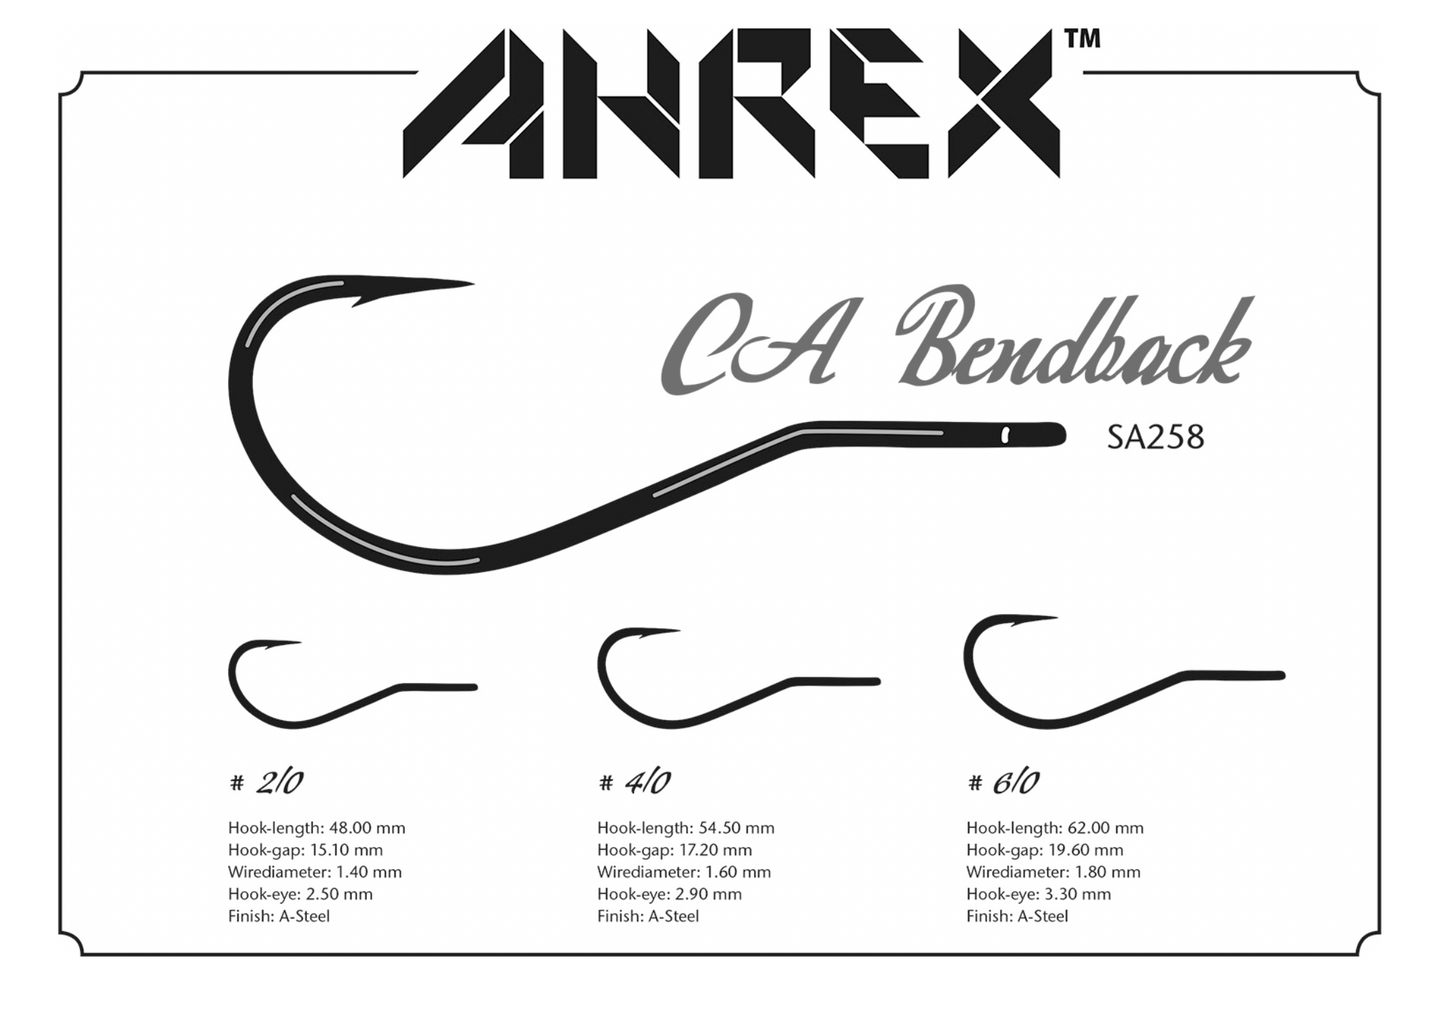 AHREX SA258 – CA BENDBACK HOOKS